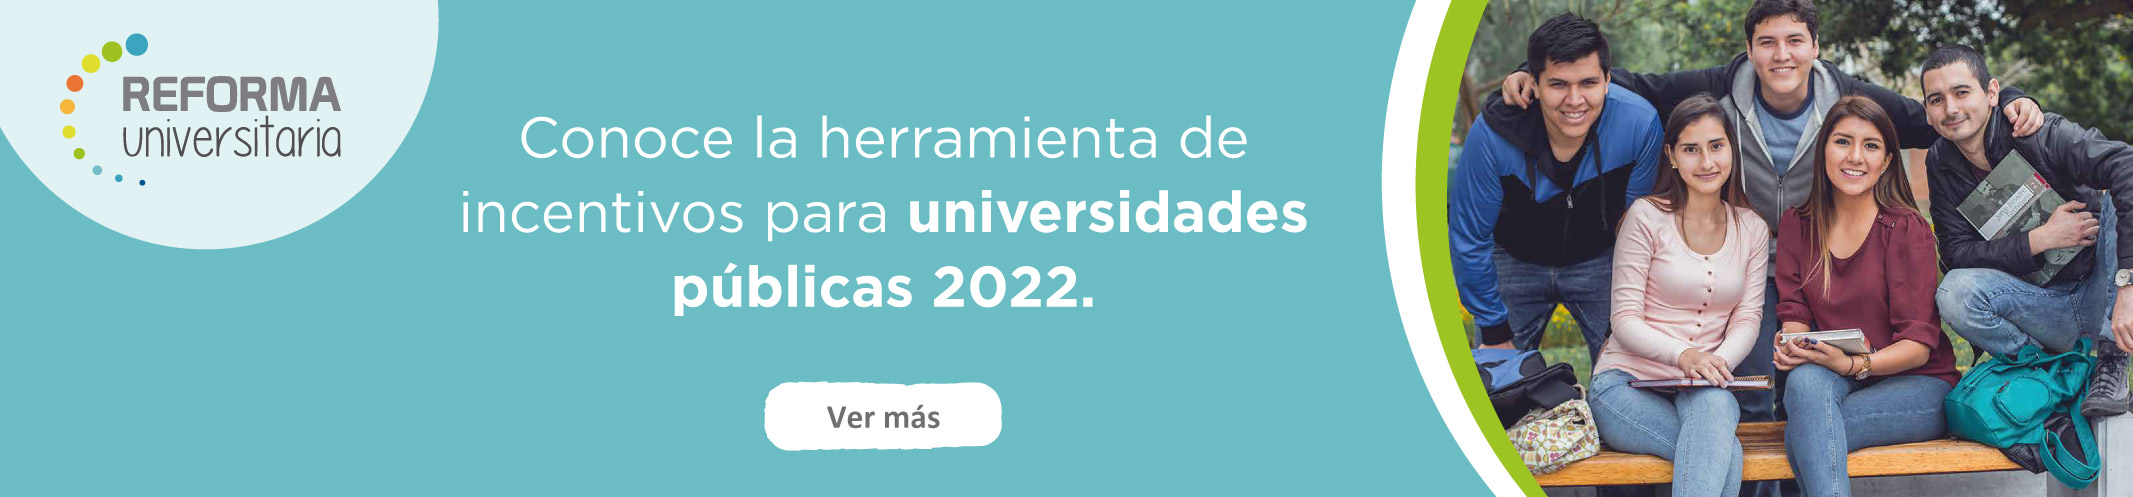 Herramientas de incentivos para universidades publicas 2022